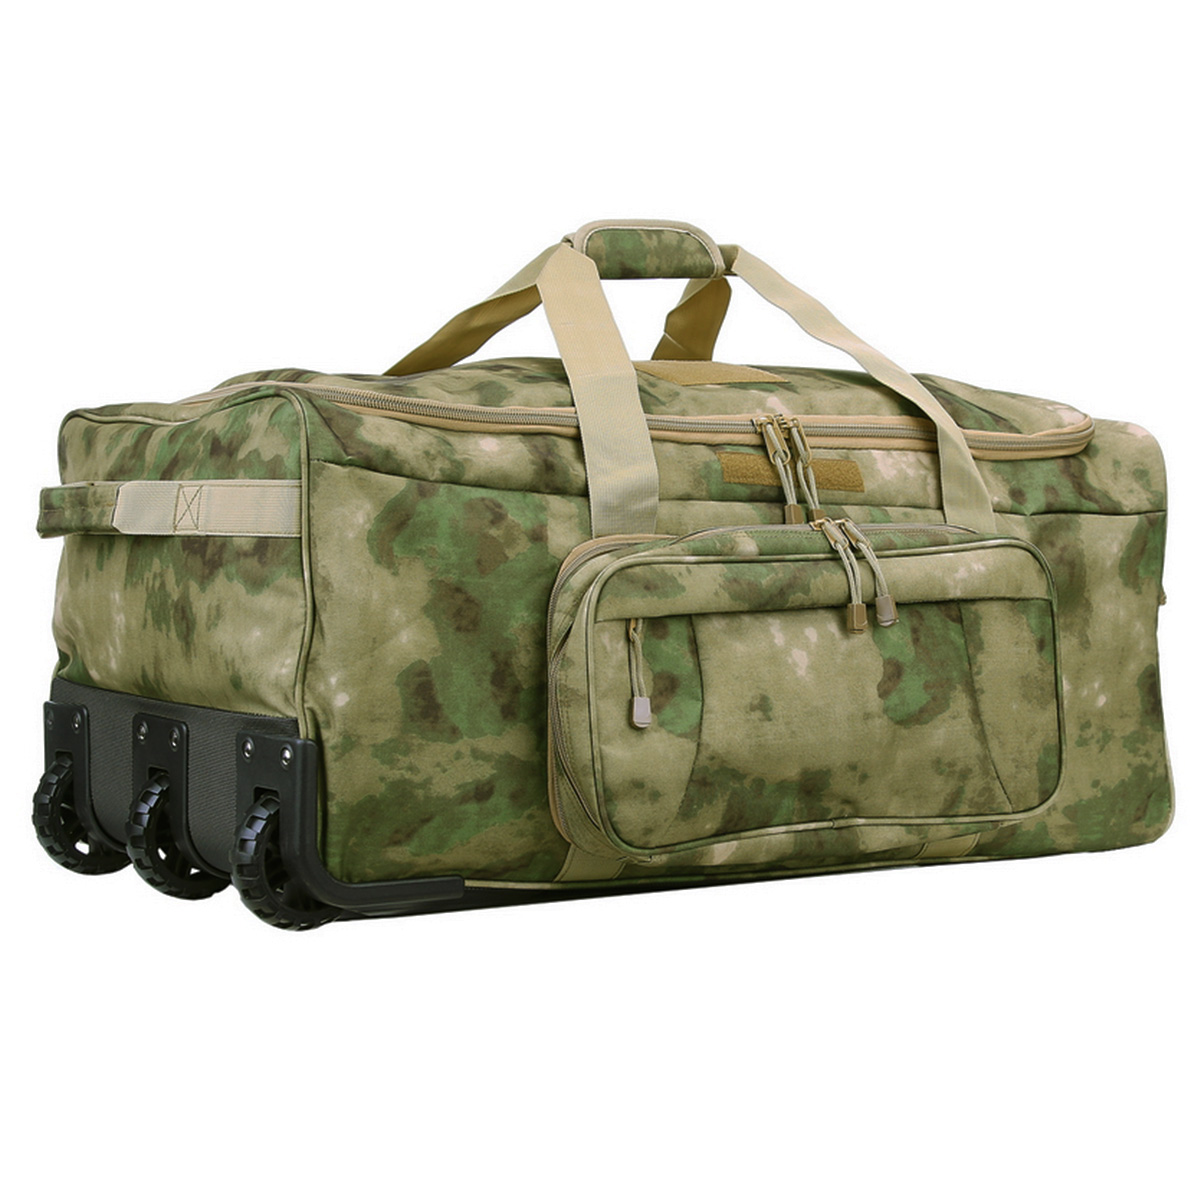 CAMO HQ - American WW2 Parachute CAMO Duffle bag